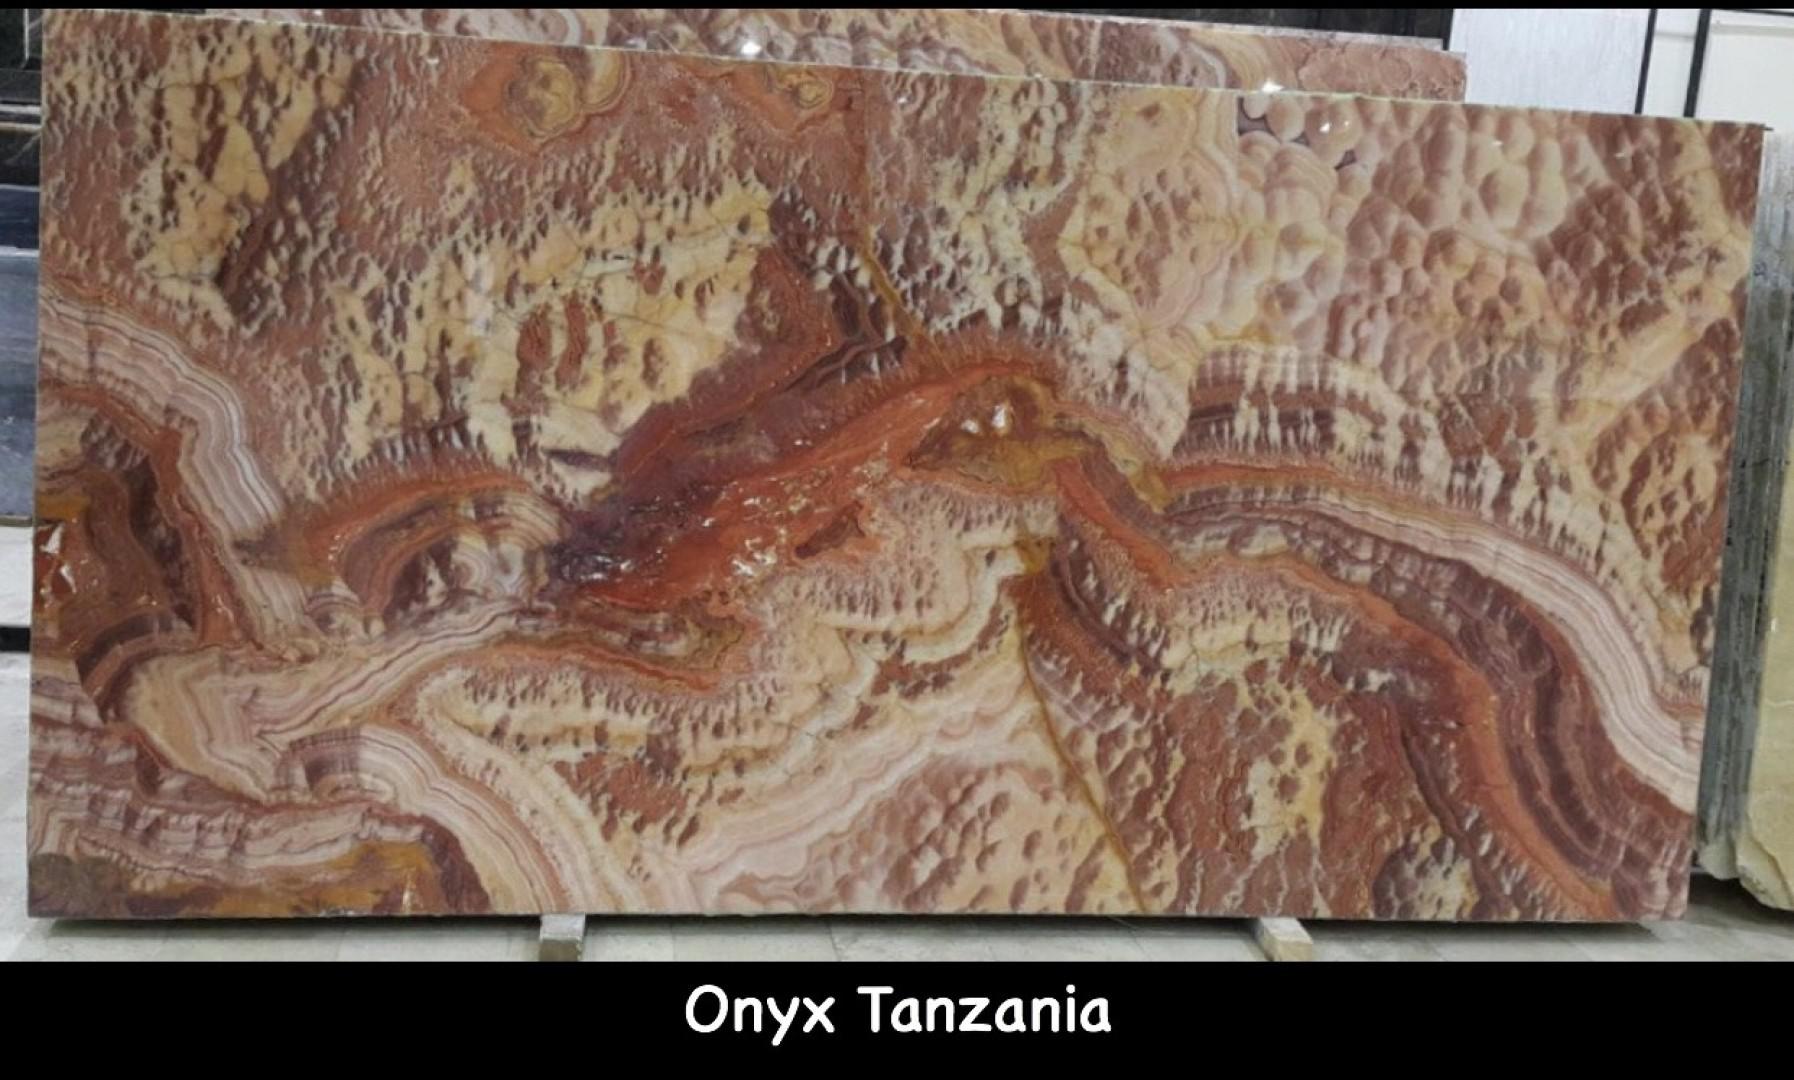 Onyx Tanzania from JSP